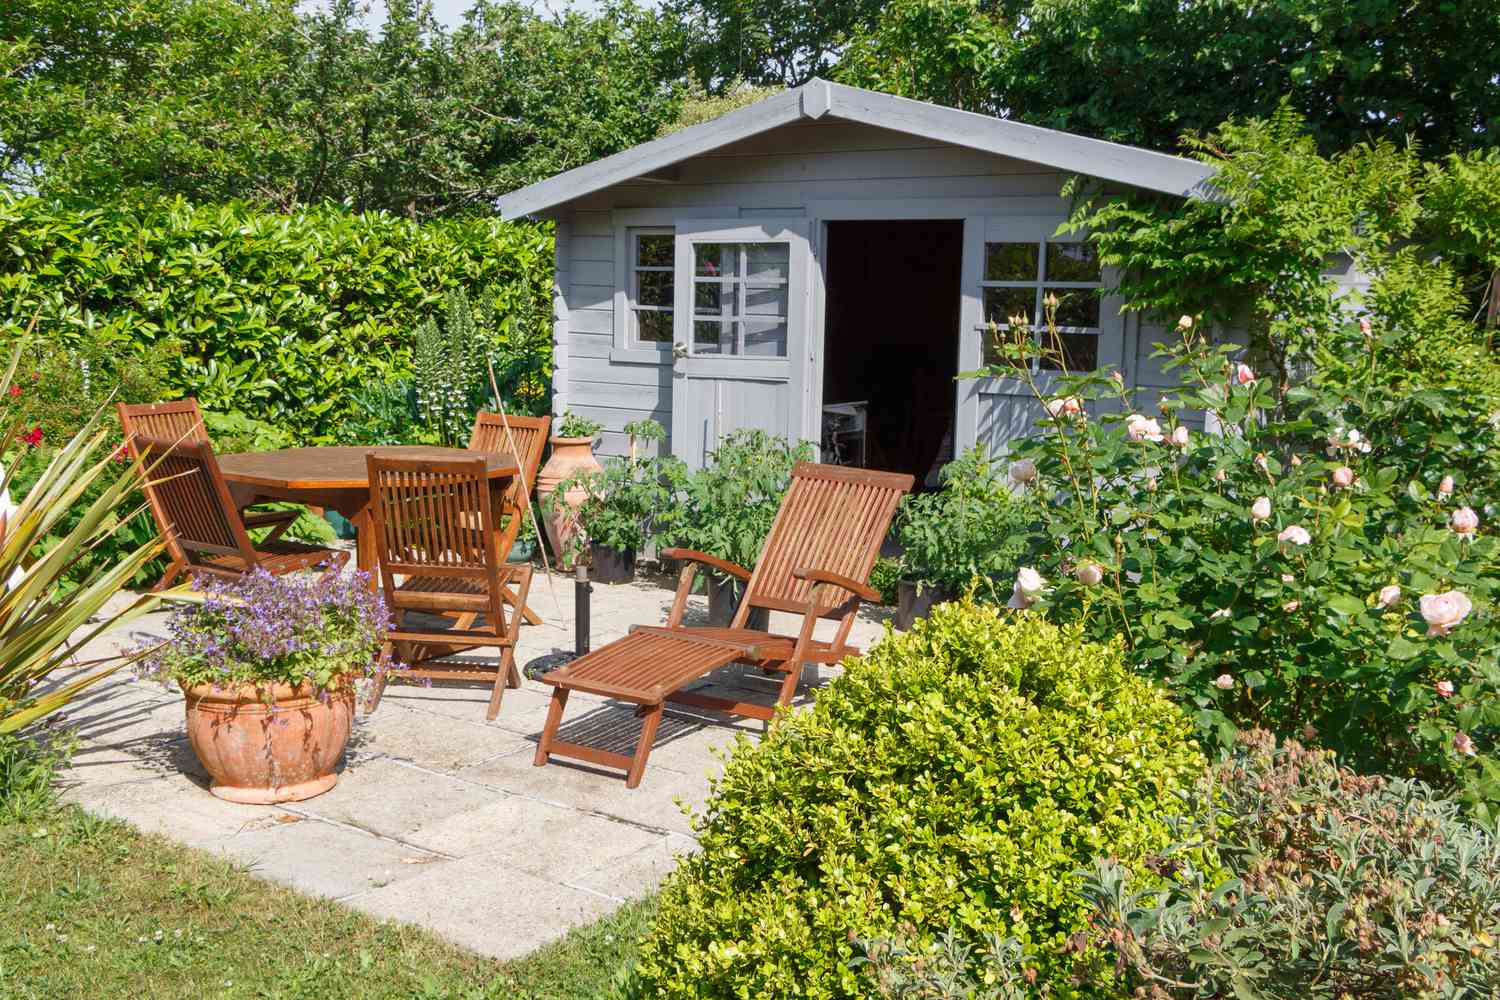 Abri de jardin avec des chaises longues, une table à manger, et beaucoup d'arbustes verts.